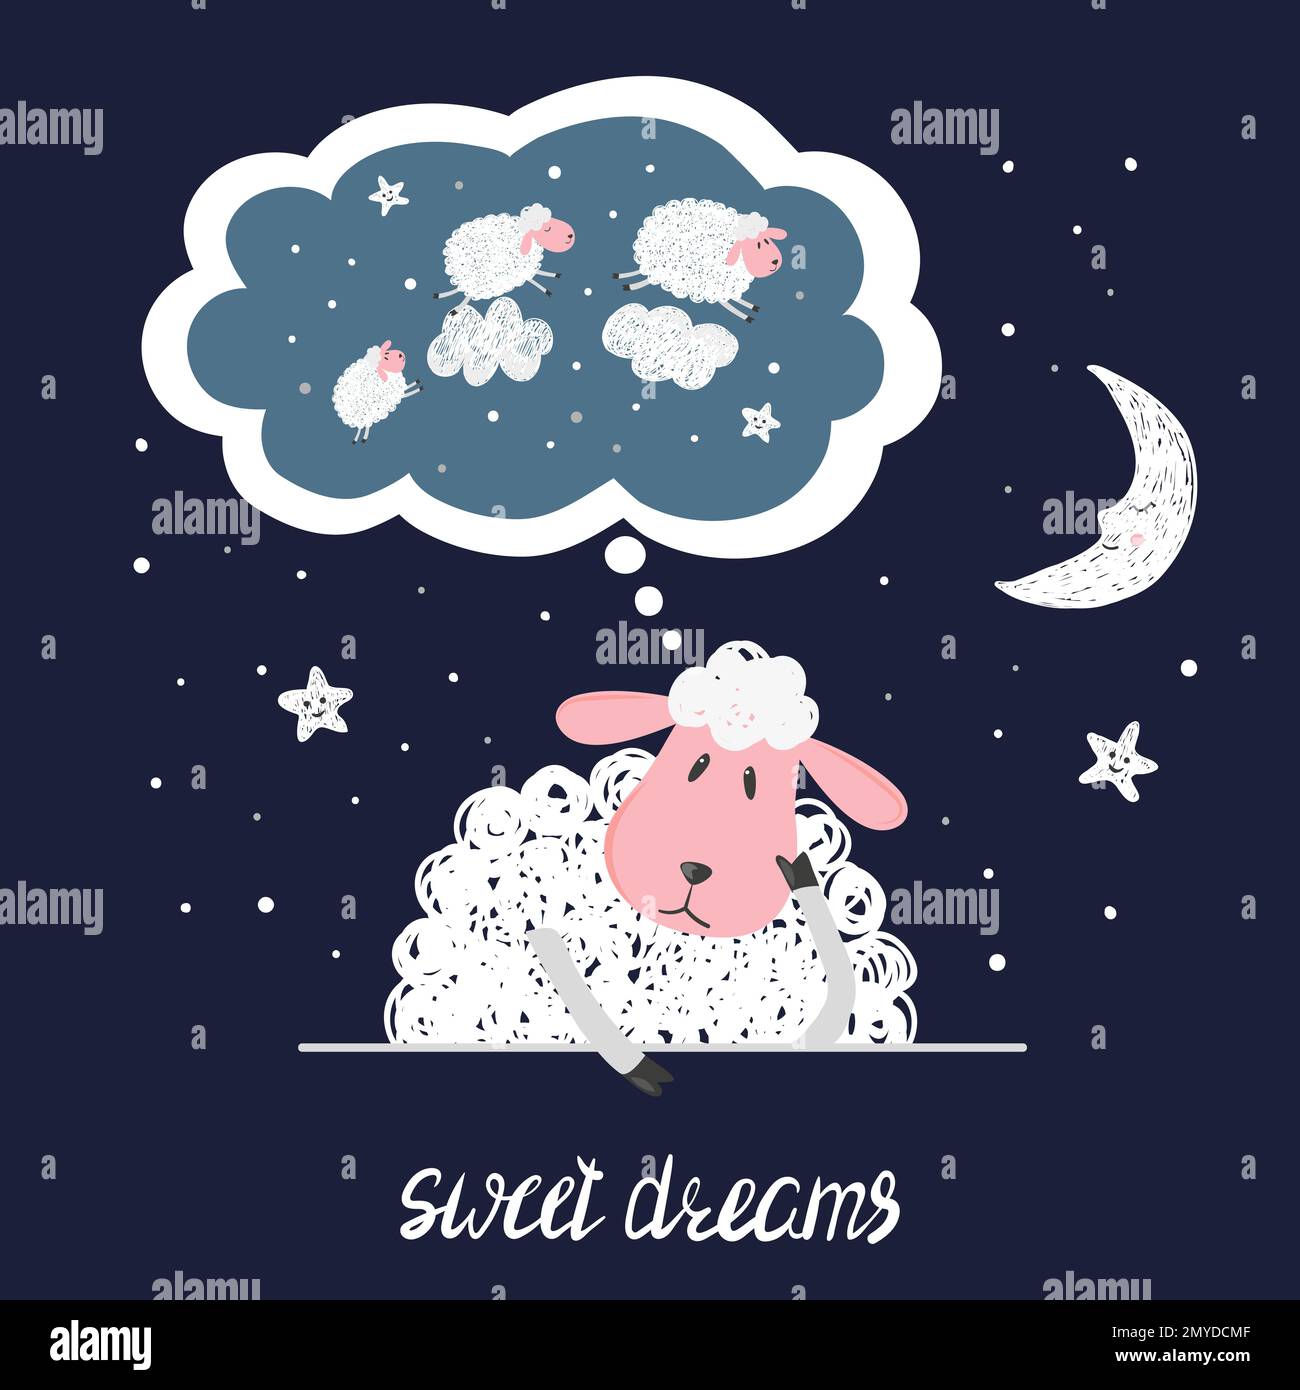 Illustrazione del vettore dei sogni dolci. Pecore carine, stelle e luna. Illustrazione Vettoriale